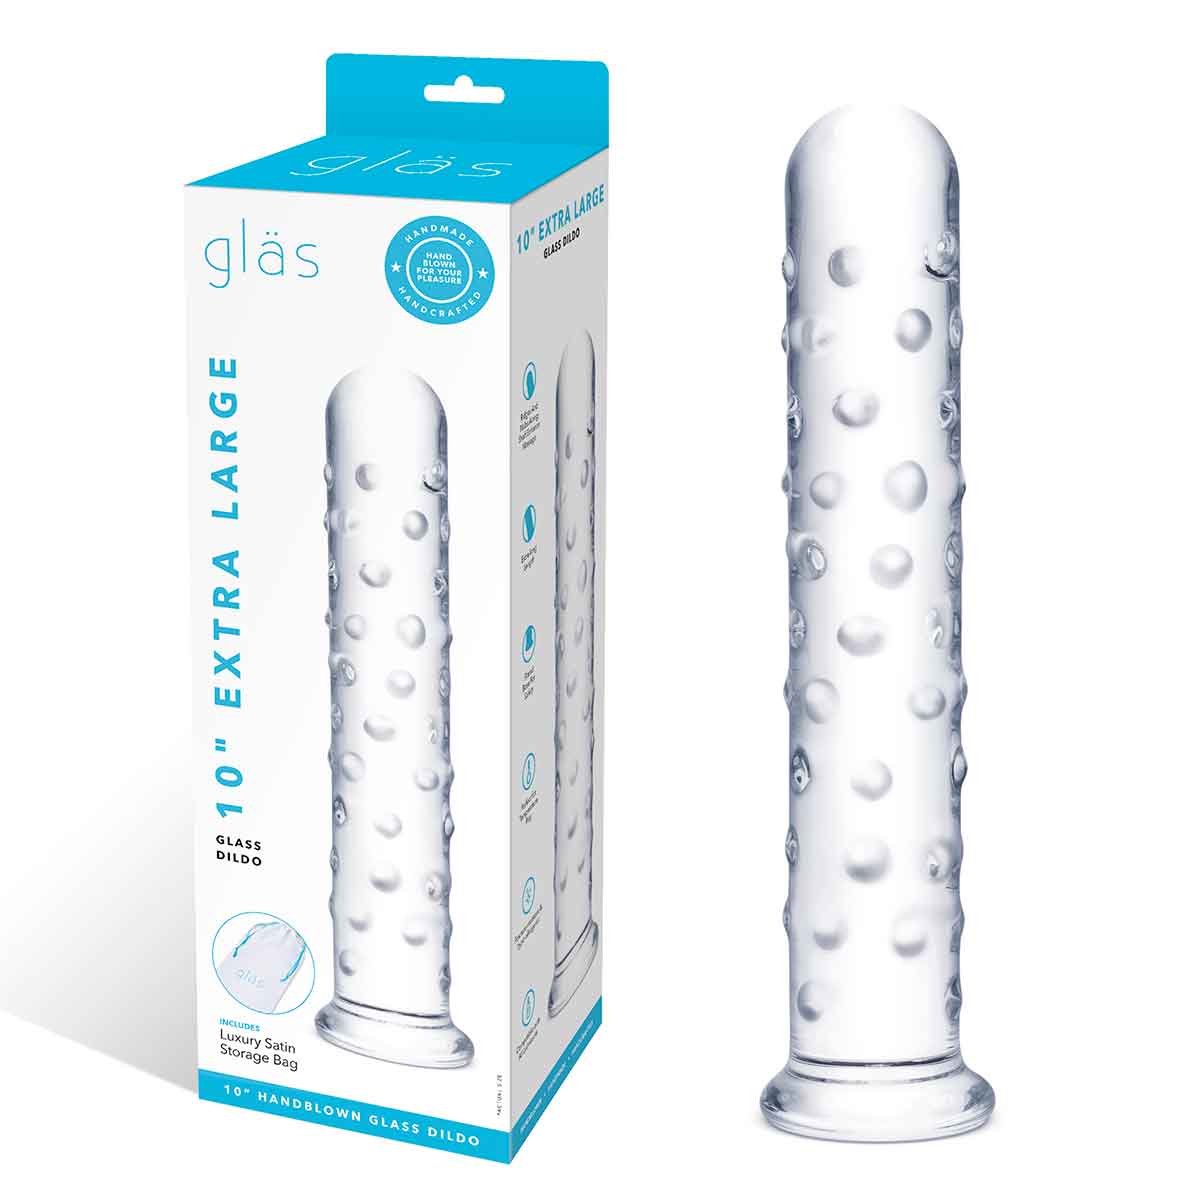 10" EXTRA LARGE GLASS DILDO - Прямой стеклянный фаллос с массажным рельефом, 25,5 см (прозрачный)